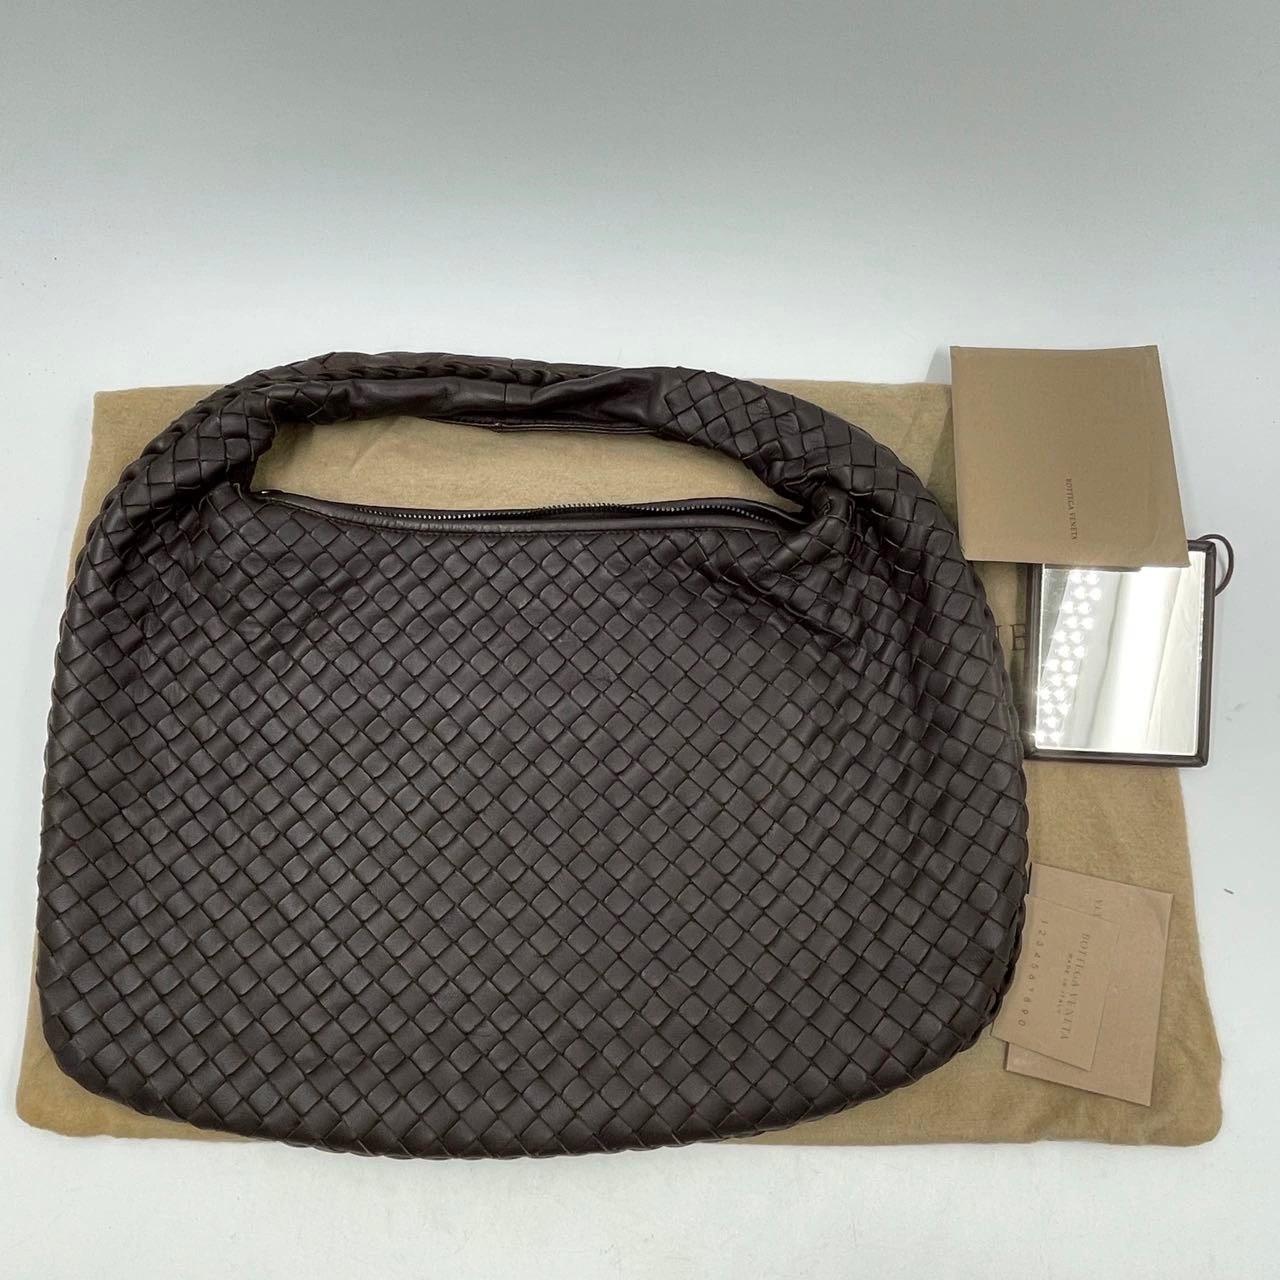 Diese Hobo Bag von Bottega Veneta ist ein außergewöhnliches Stück Luxus, gefertigt aus Lammleder mit dem unverkennbaren Intrecciato-Gewebe. Mit einer Breite von 40 cm am Boden bietet sie genug Platz für all Ihre Utensilien und ist das perfekte